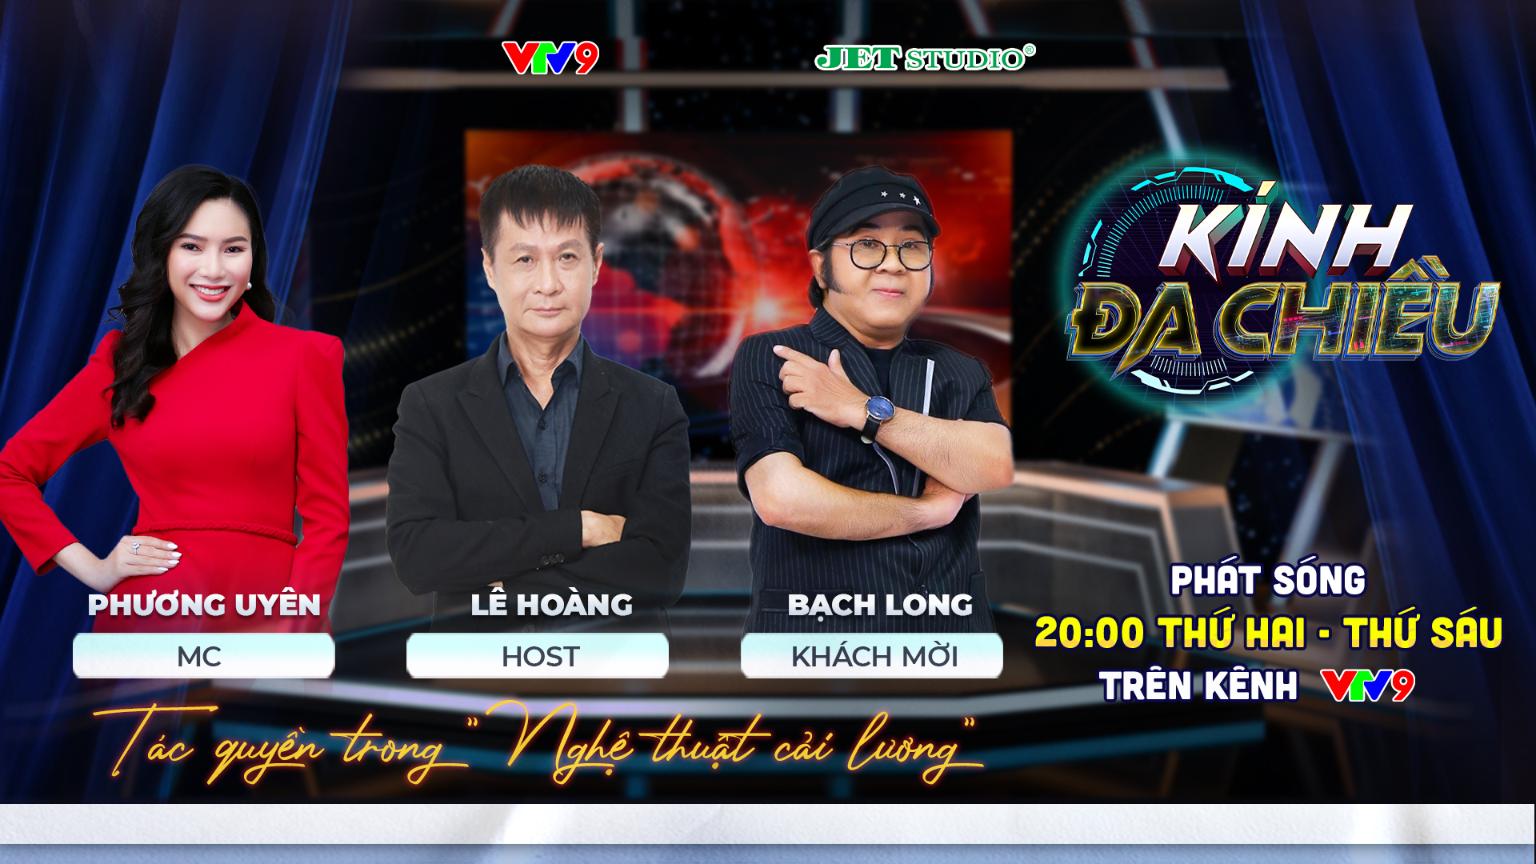 POSTER KINH DA CHIEU 2 Đạo diễn Lê Hoàng làm host chương trình Kính Đa Chiều